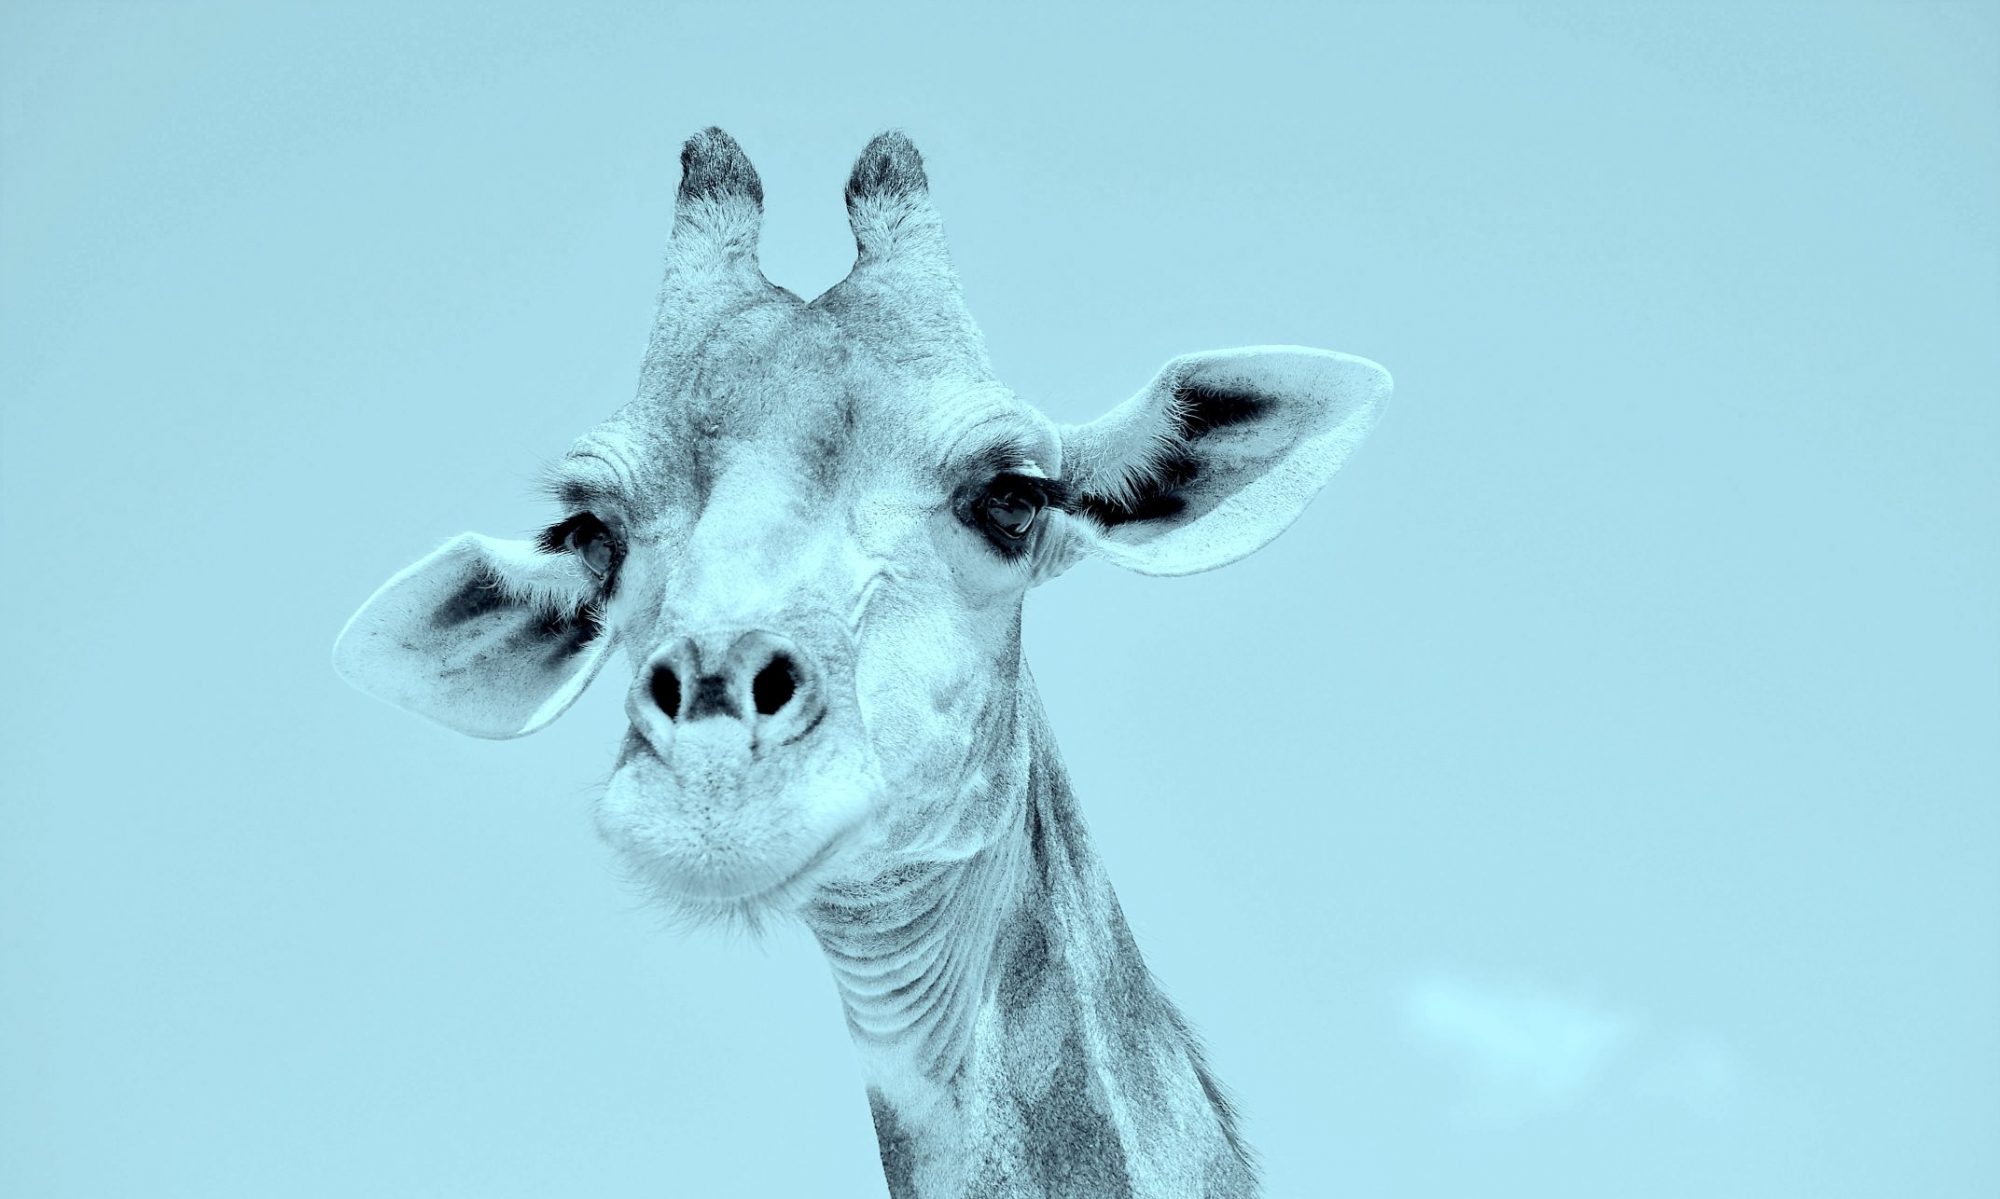 Giraffe (Hintergrund)